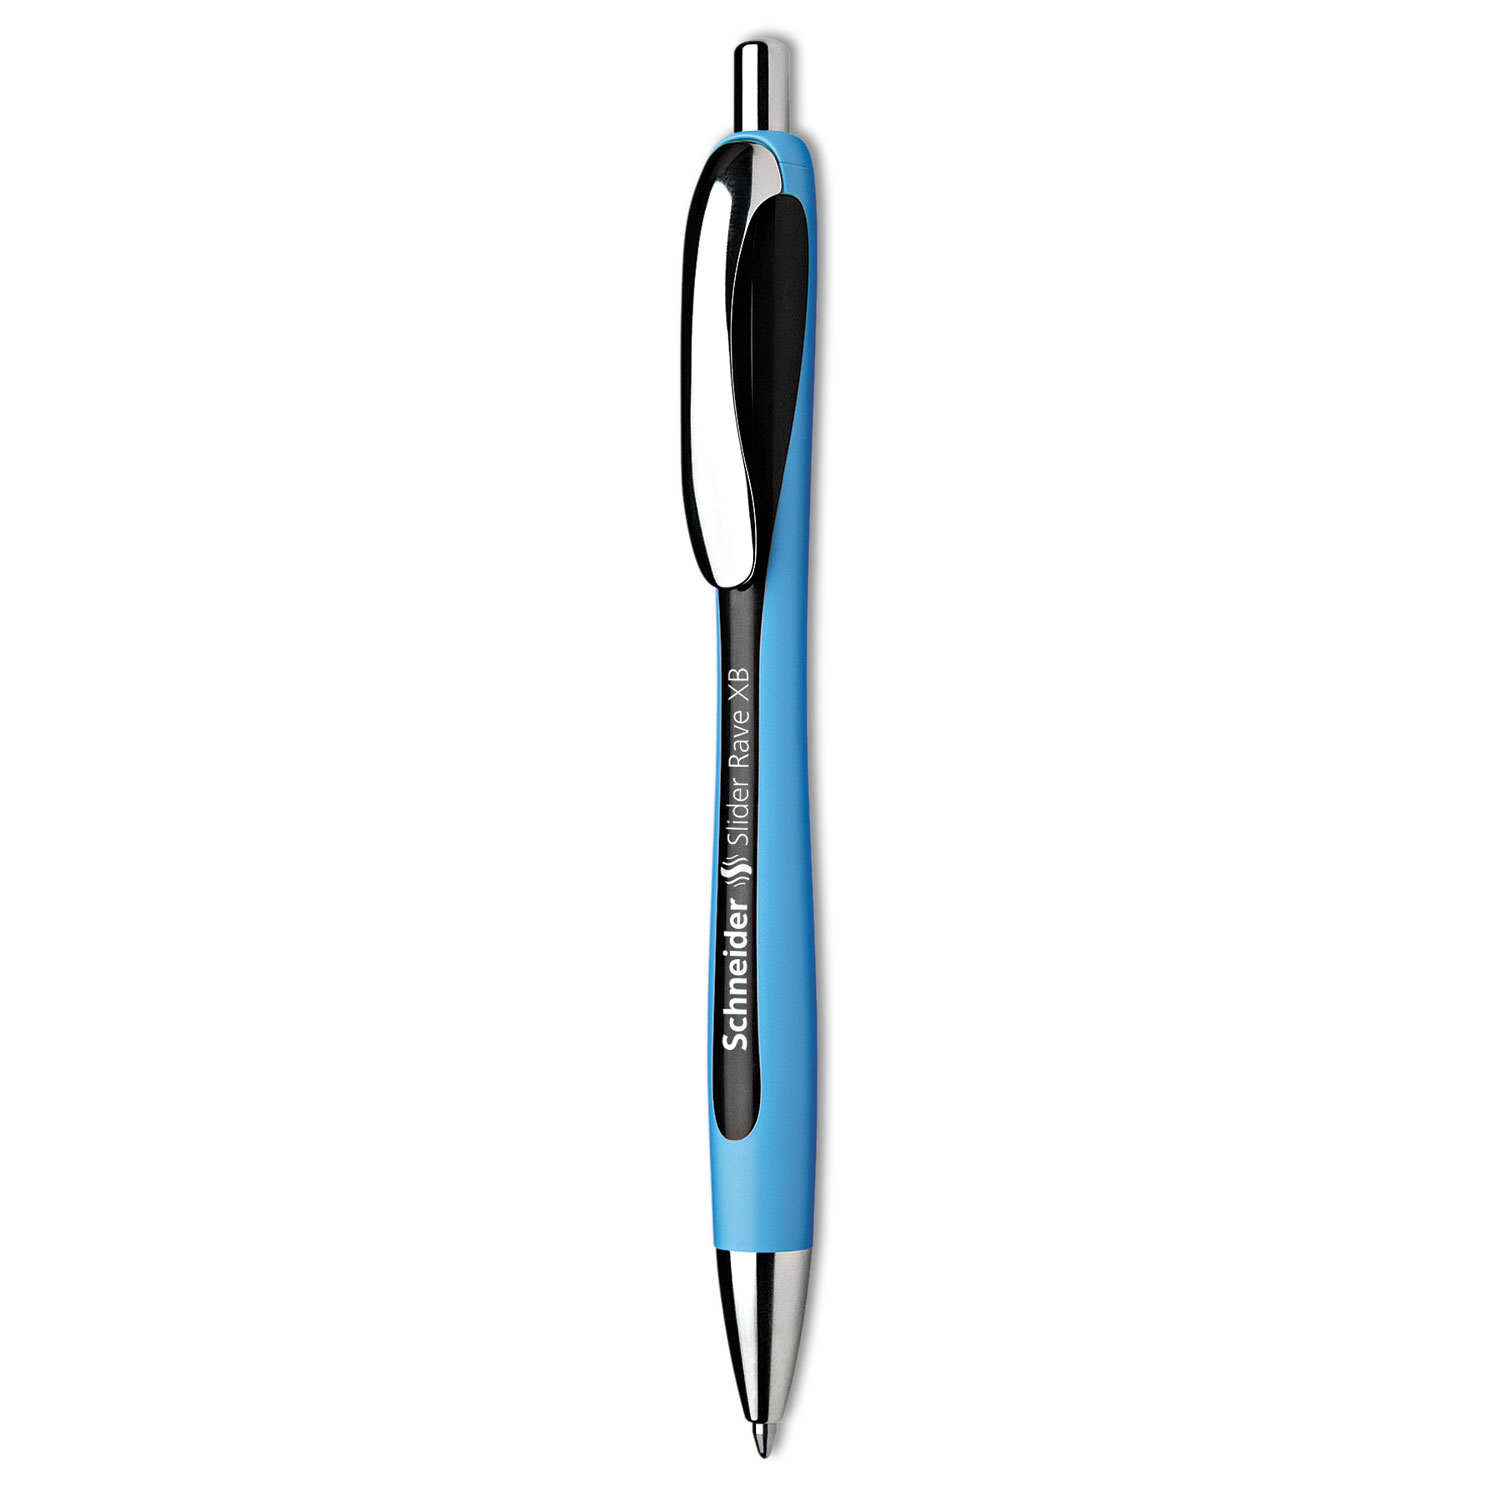 Schneider® Schneider Rave XB Retractable Ballpoint Pen, 1.4mm, Black Ink, Blue/Black Barrel